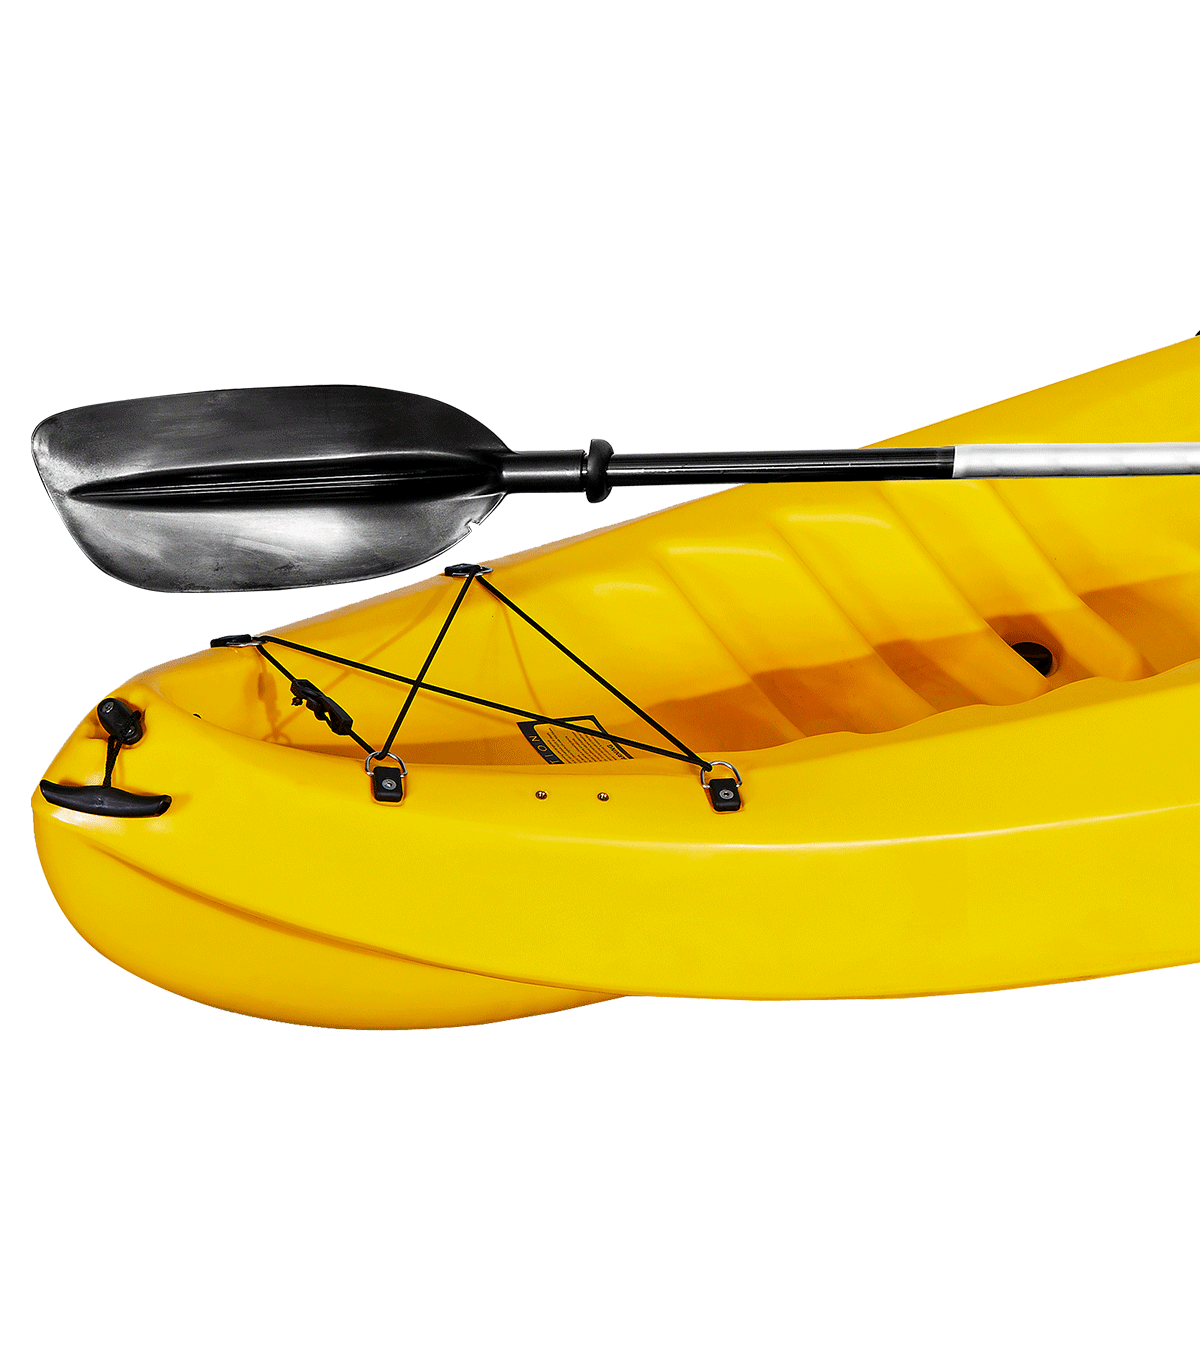 Caiaque De Recreio Individual Mola Vermelho Amarelo (270x80 Cm) | Sport Zone MKP